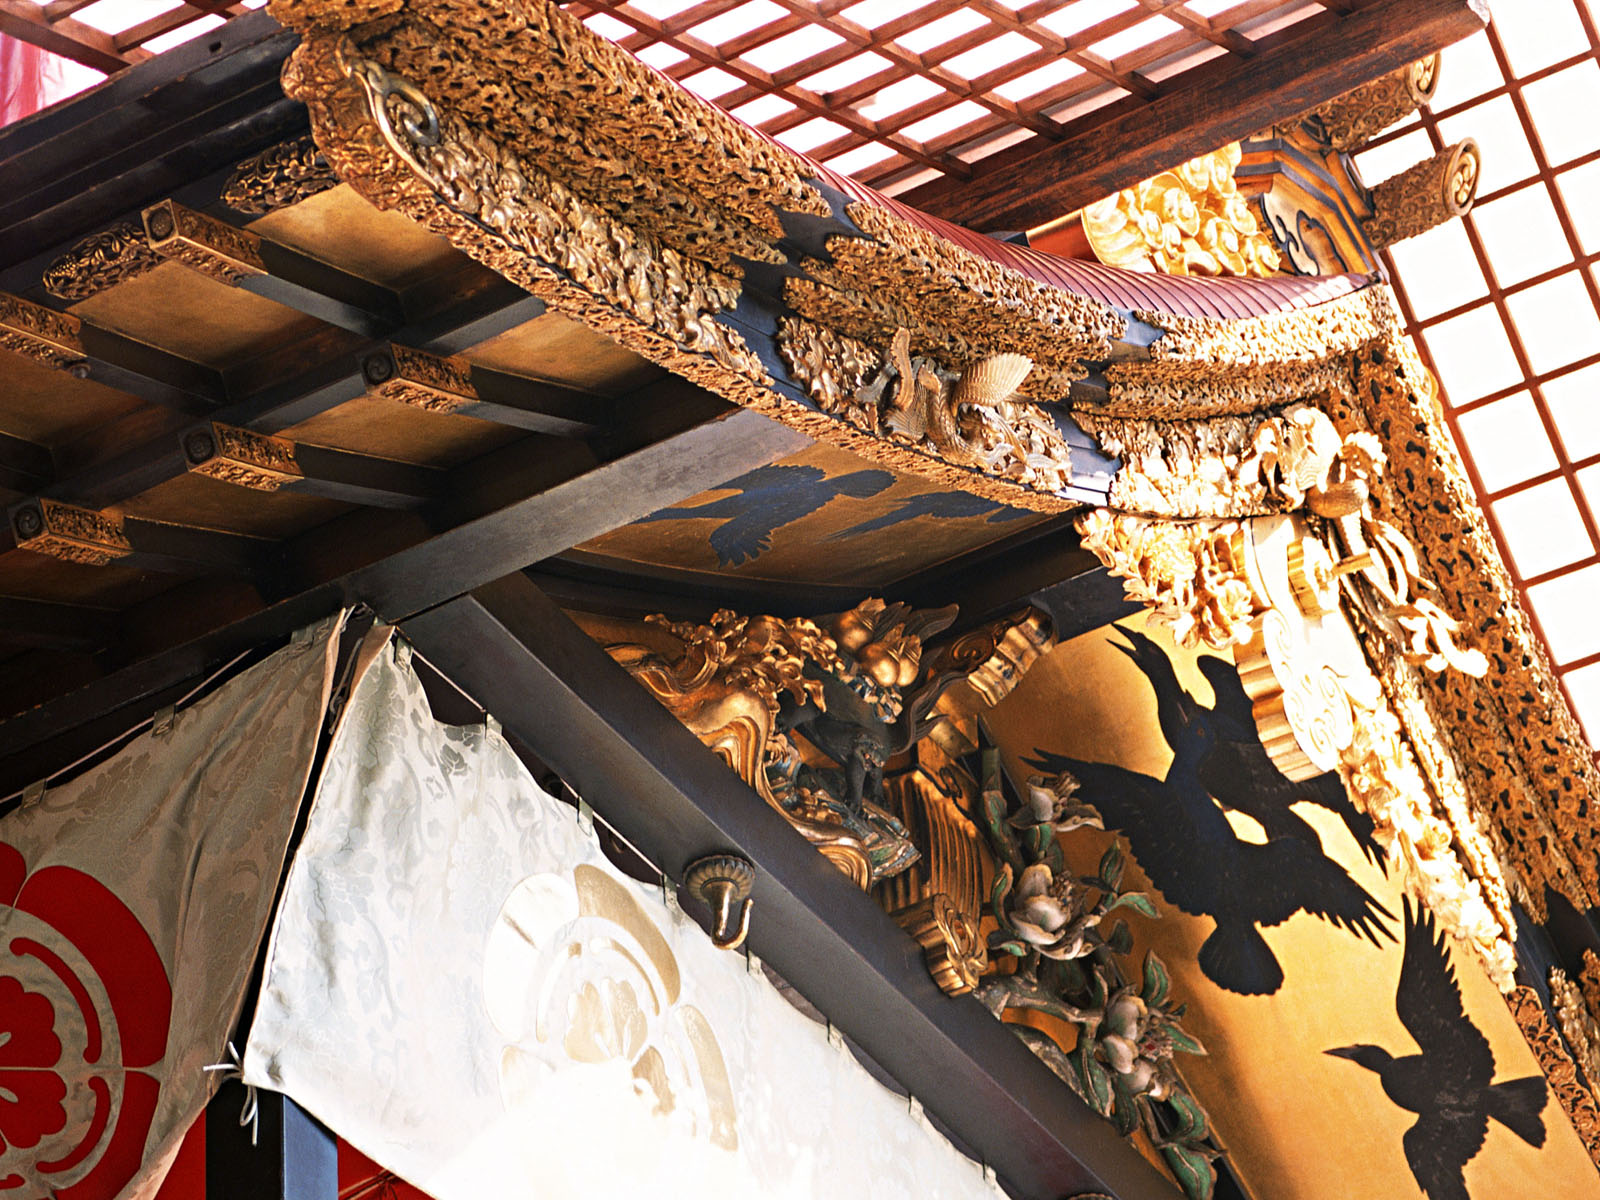 壁纸1600x1200日本之风 特色文化高清壁纸壁纸 日本之风 特色文化高清壁纸壁纸 日本之风 特色文化高清壁纸图片 日本之风 特色文化高清壁纸素材 其他壁纸 其他图库 其他图片素材桌面壁纸